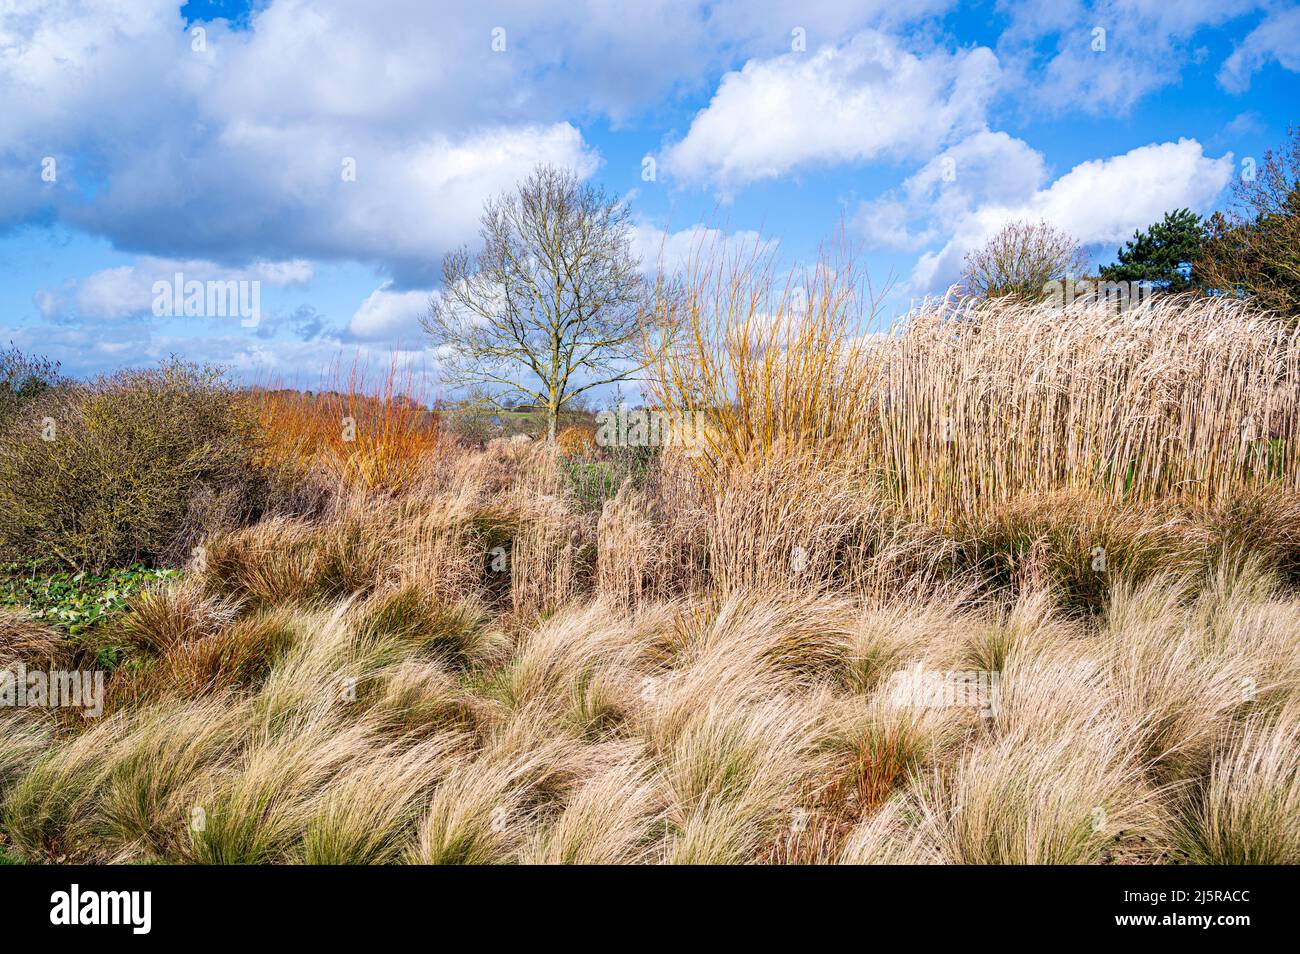 Masa de hierbas que dan interés estacional, en un soleado día de invierno. Foto de stock